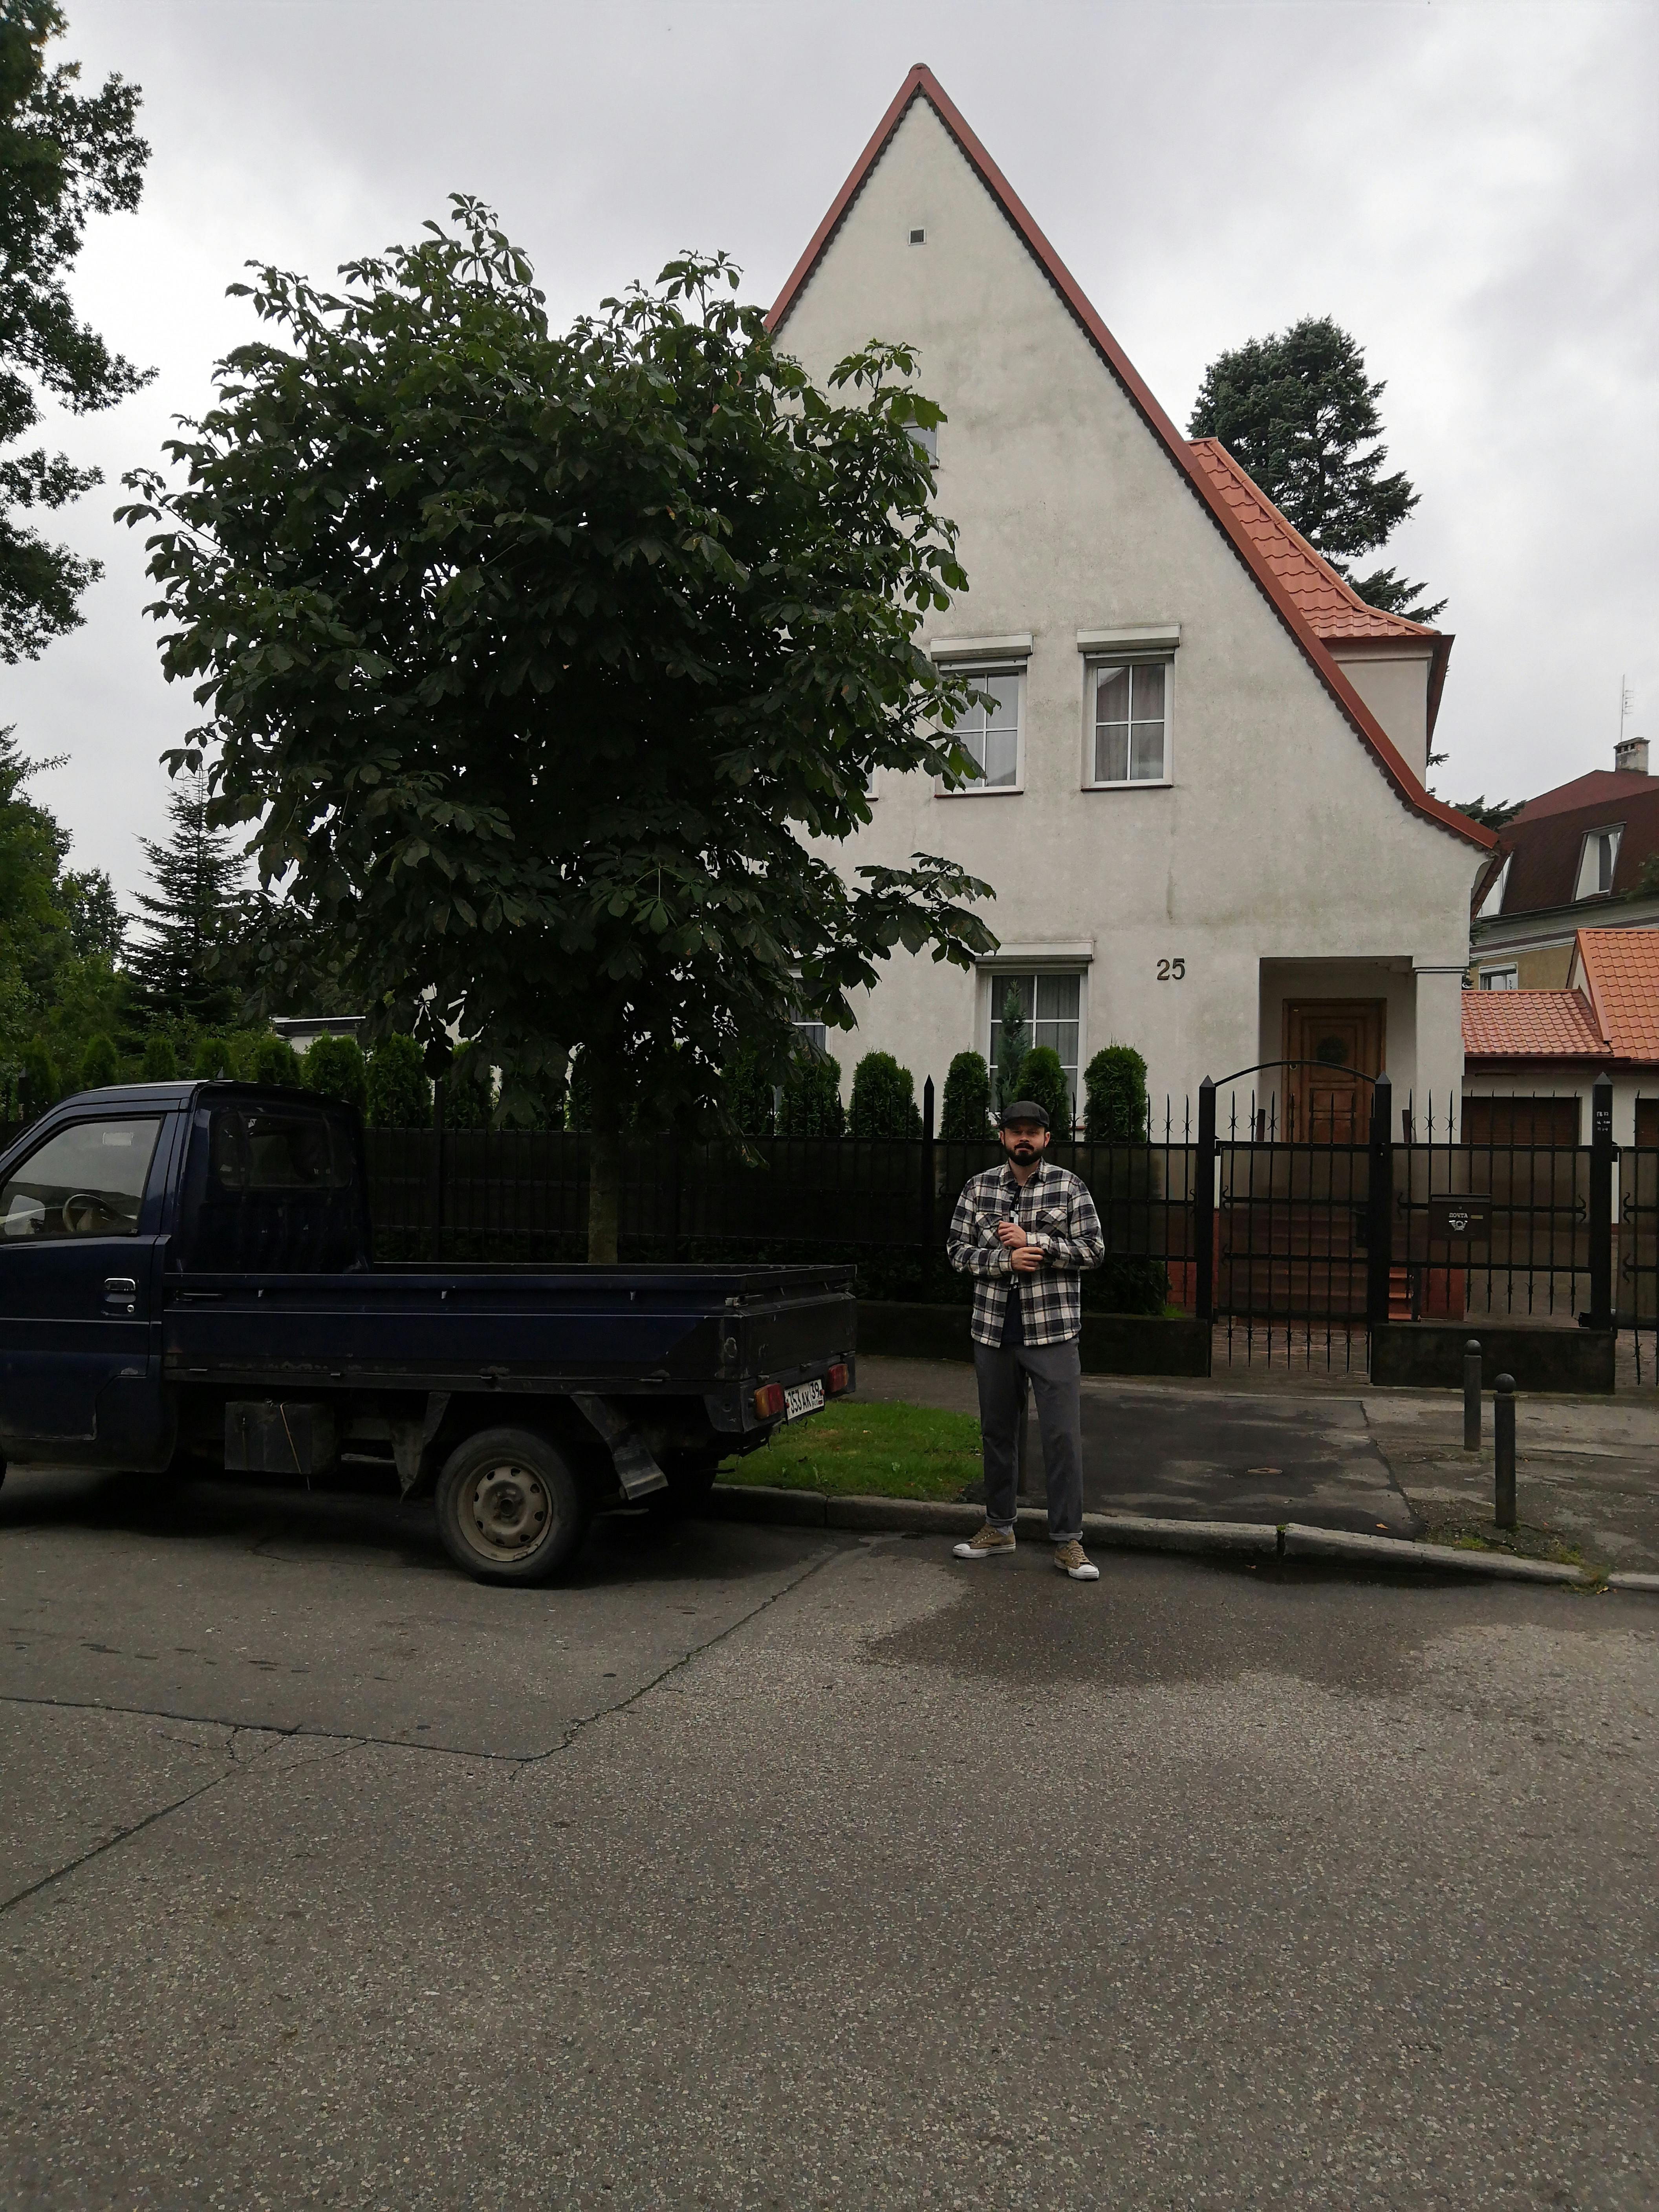 Hombre extraño junto a un automóvil cerca de una casa | Fuente: Pexels